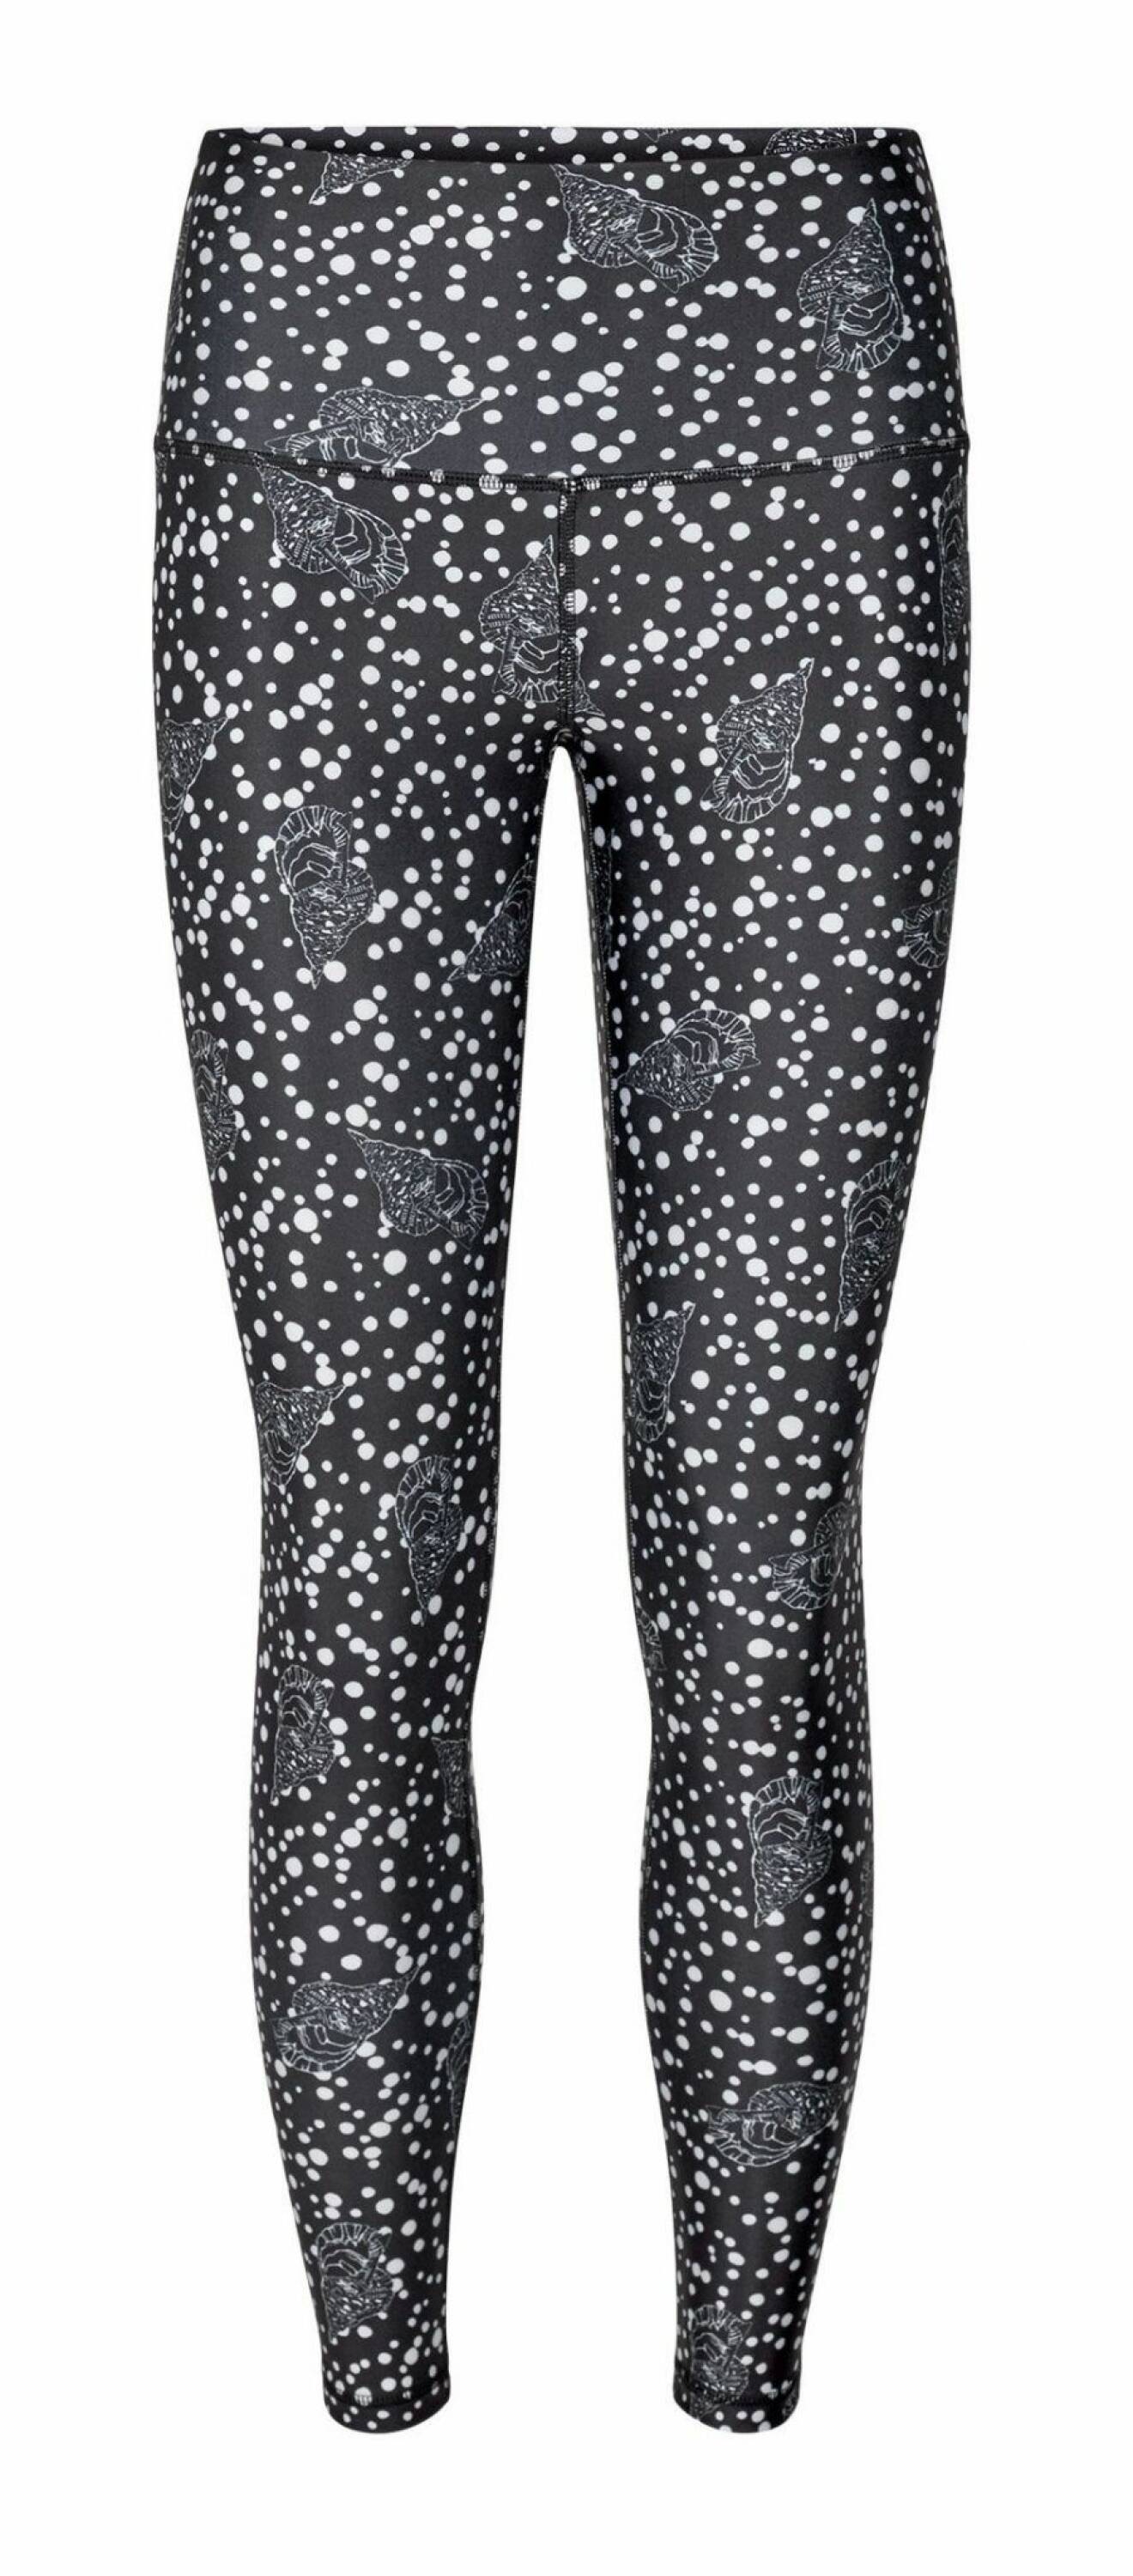 Högmidjade leggings med snäckmönster från danska märket H2o Fagerholt